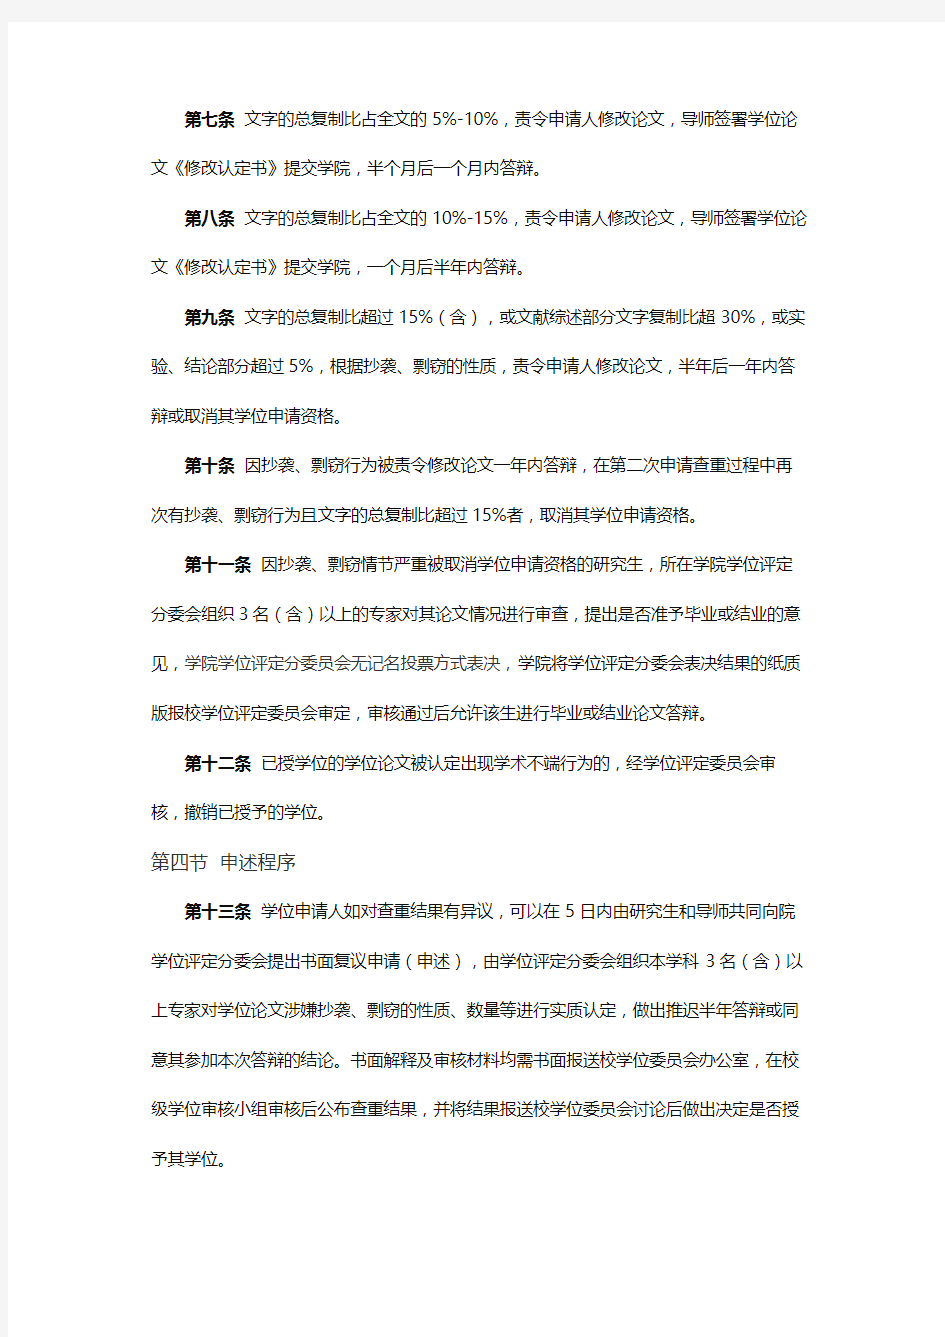 北京化工大学研究生学位论文学术规范审核实施办法